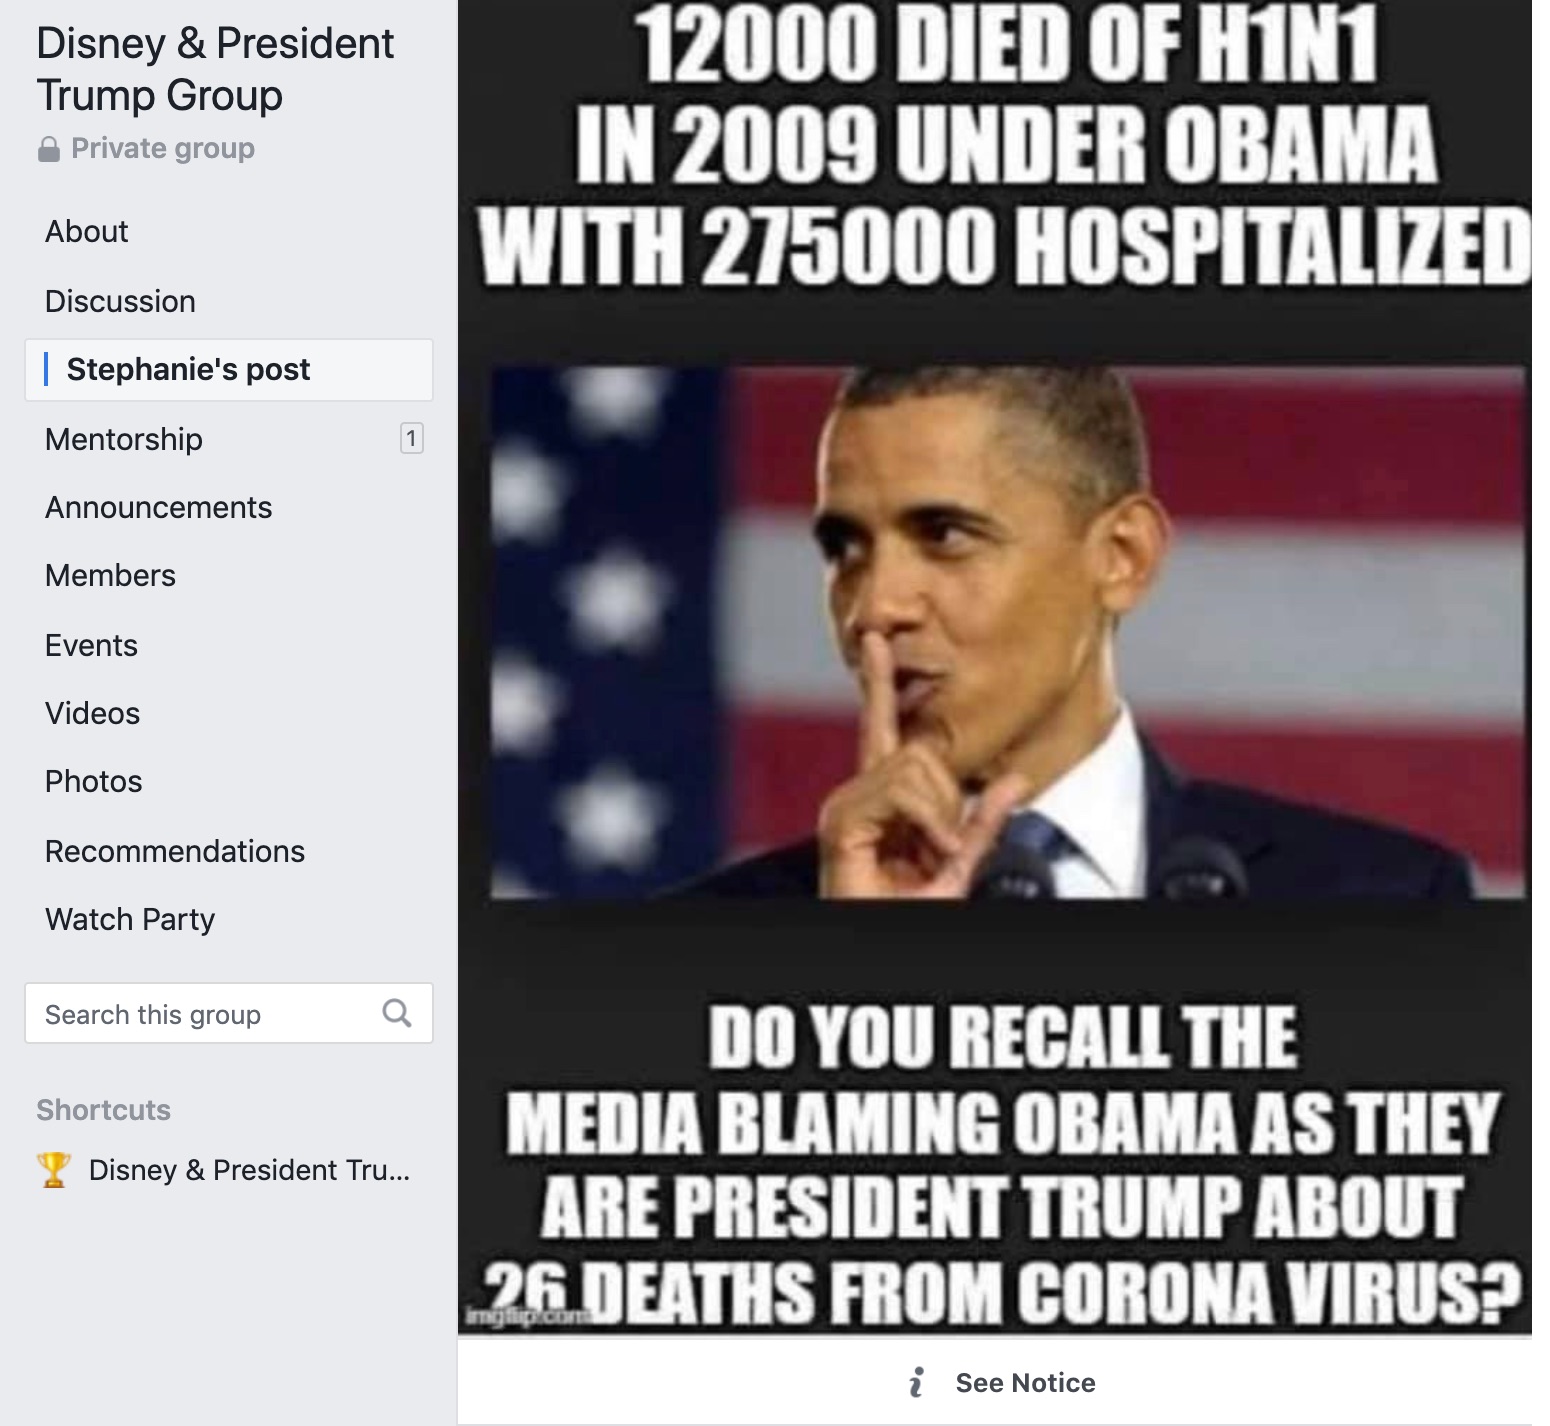 12000 died of h1n1 under obama media blaming